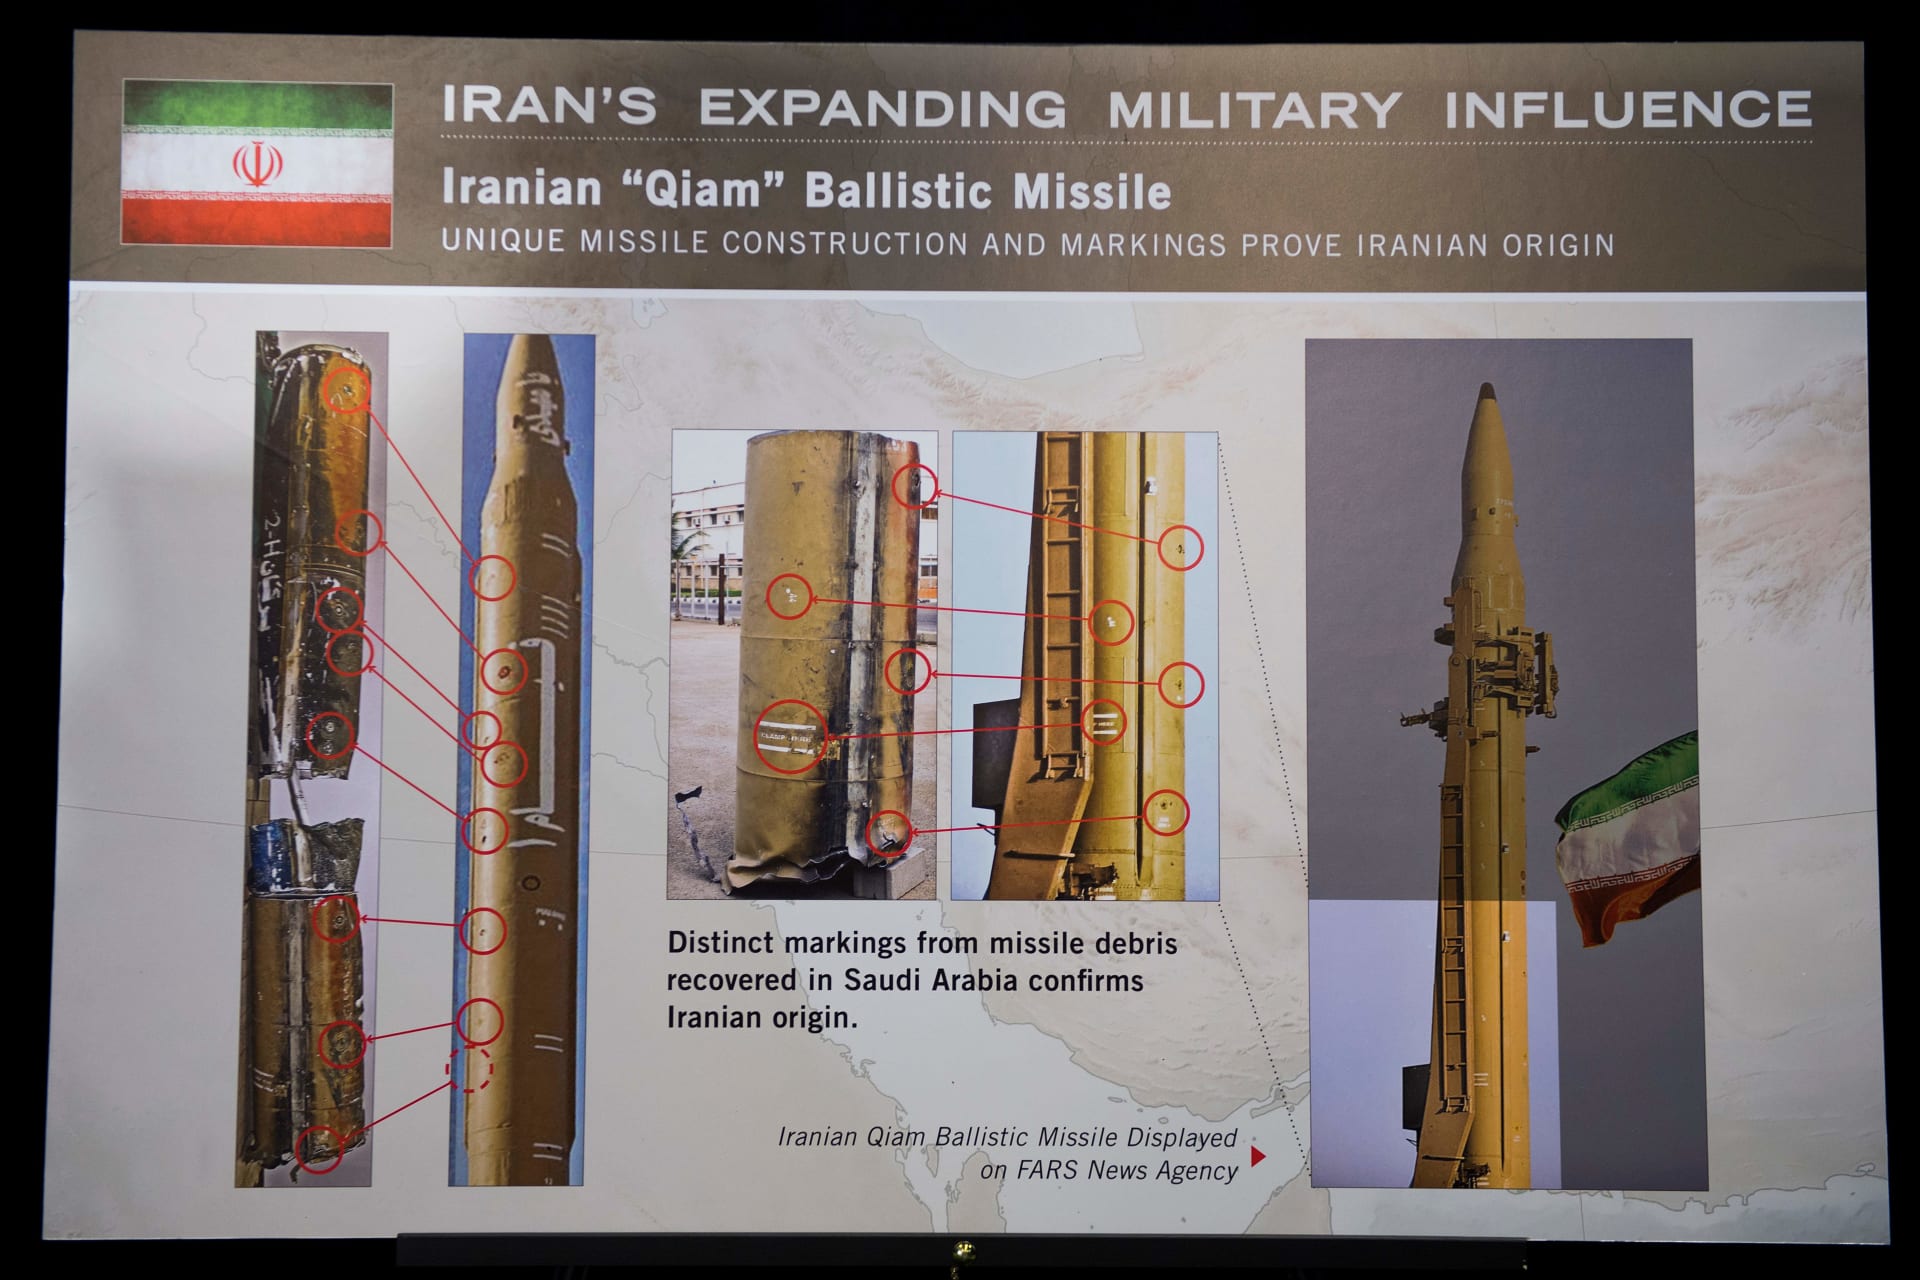 تقرير دولي: صواريخ وطائرات إيرانية للحوثيين.. والجوع يستخدم كسلاح